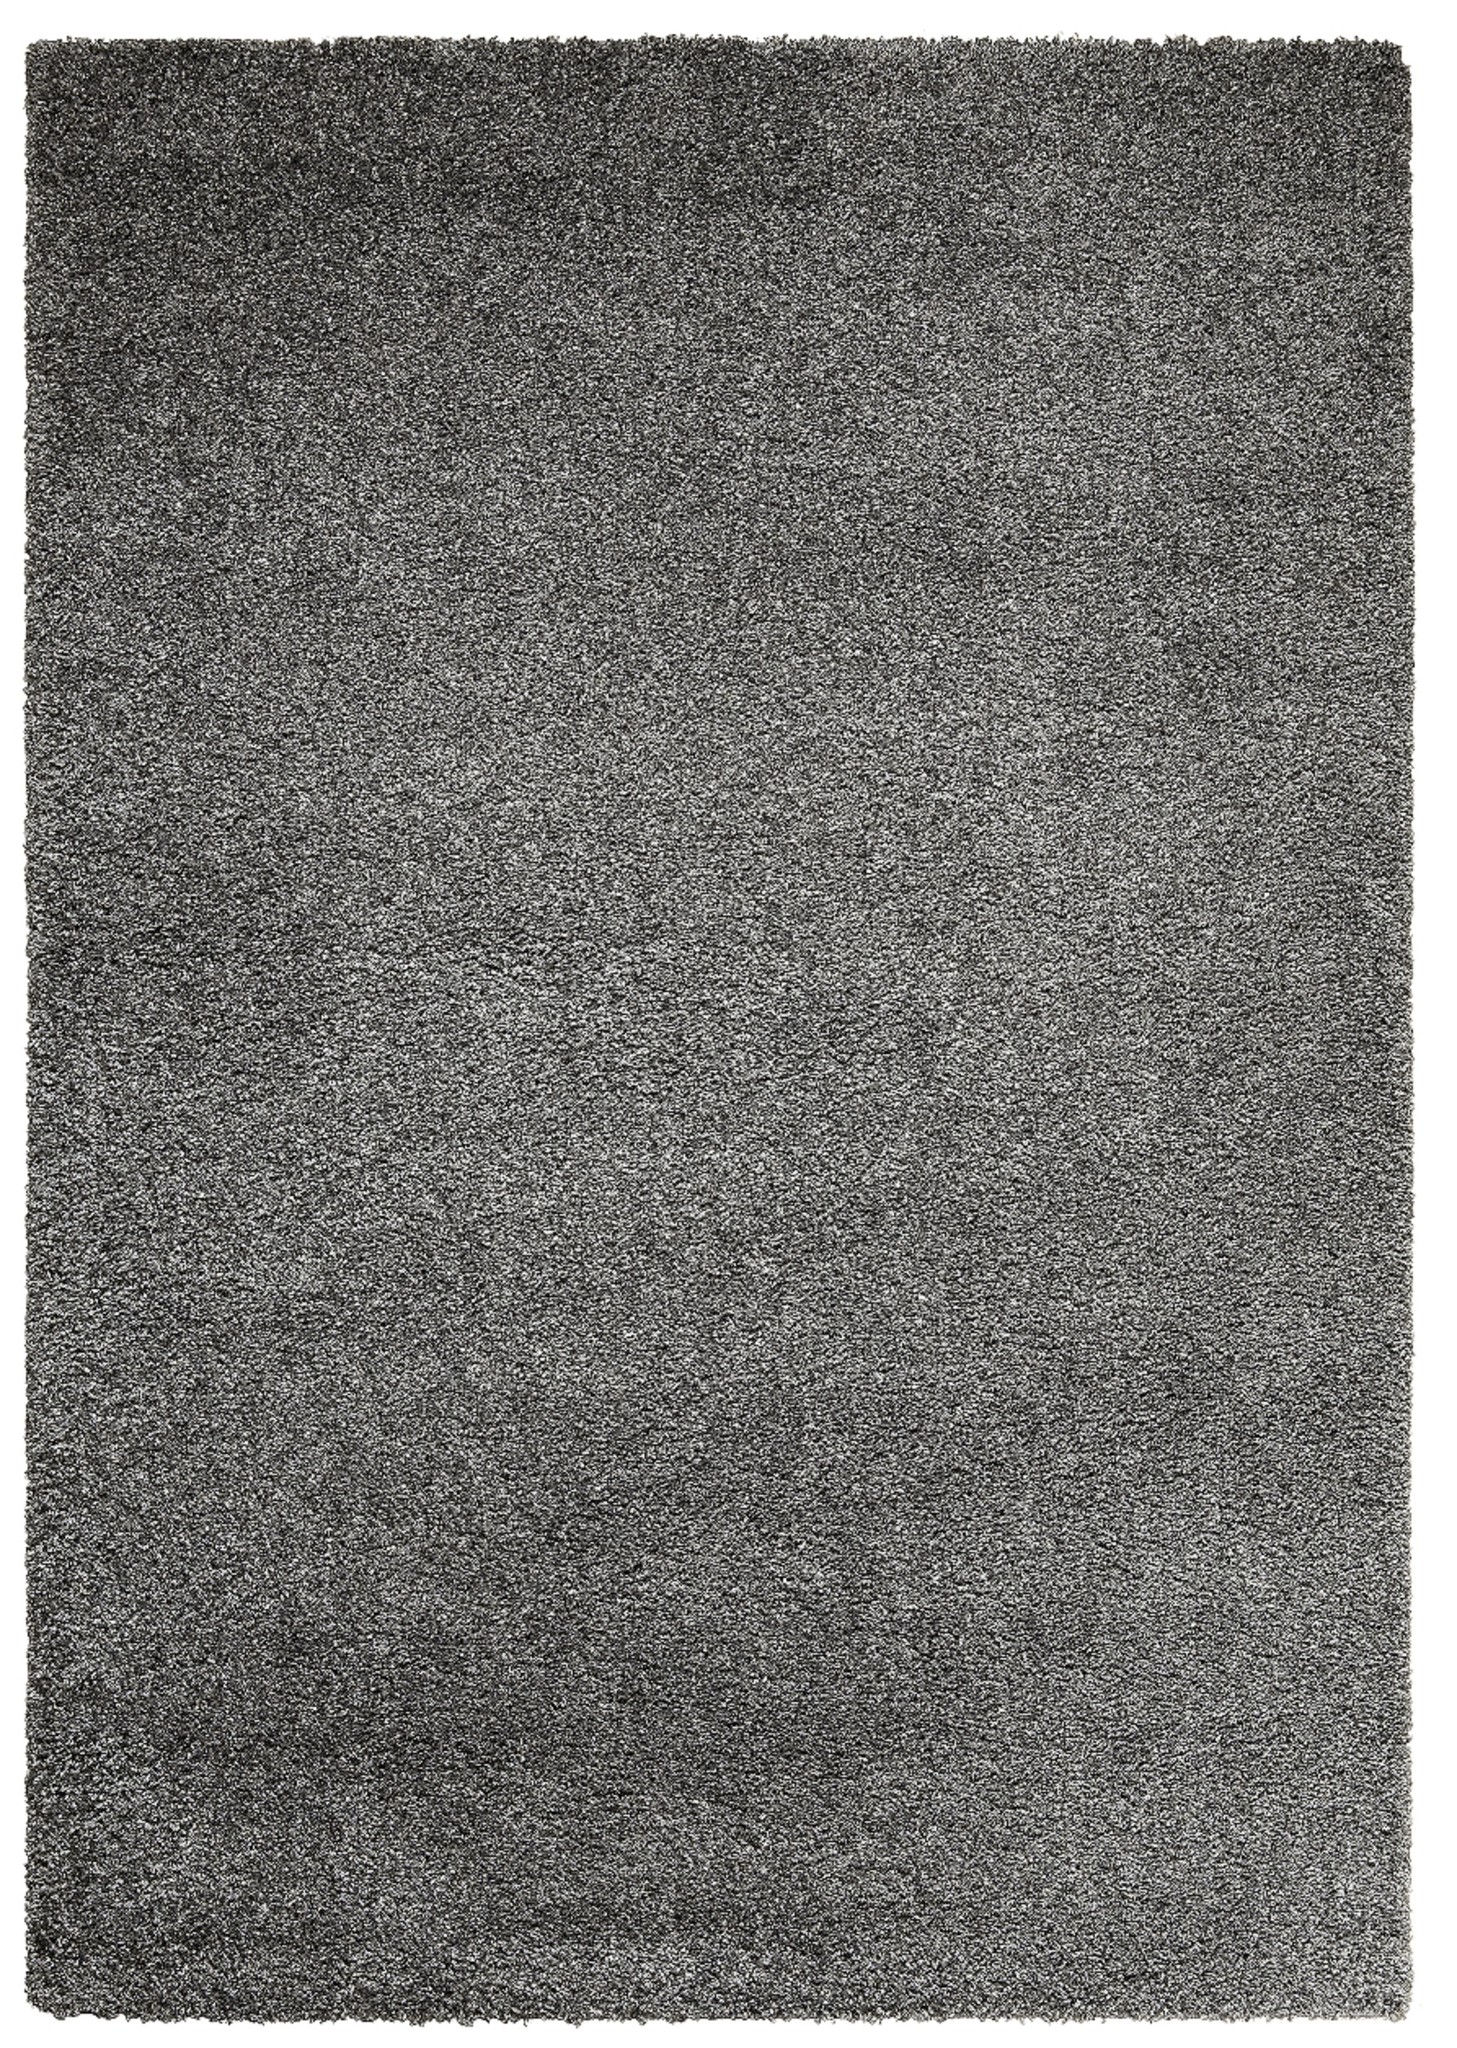 Bachelor opleiding Boomgaard Proportioneel Hoogpolig tapijt grijs 30 mm | Onlinemattenshop